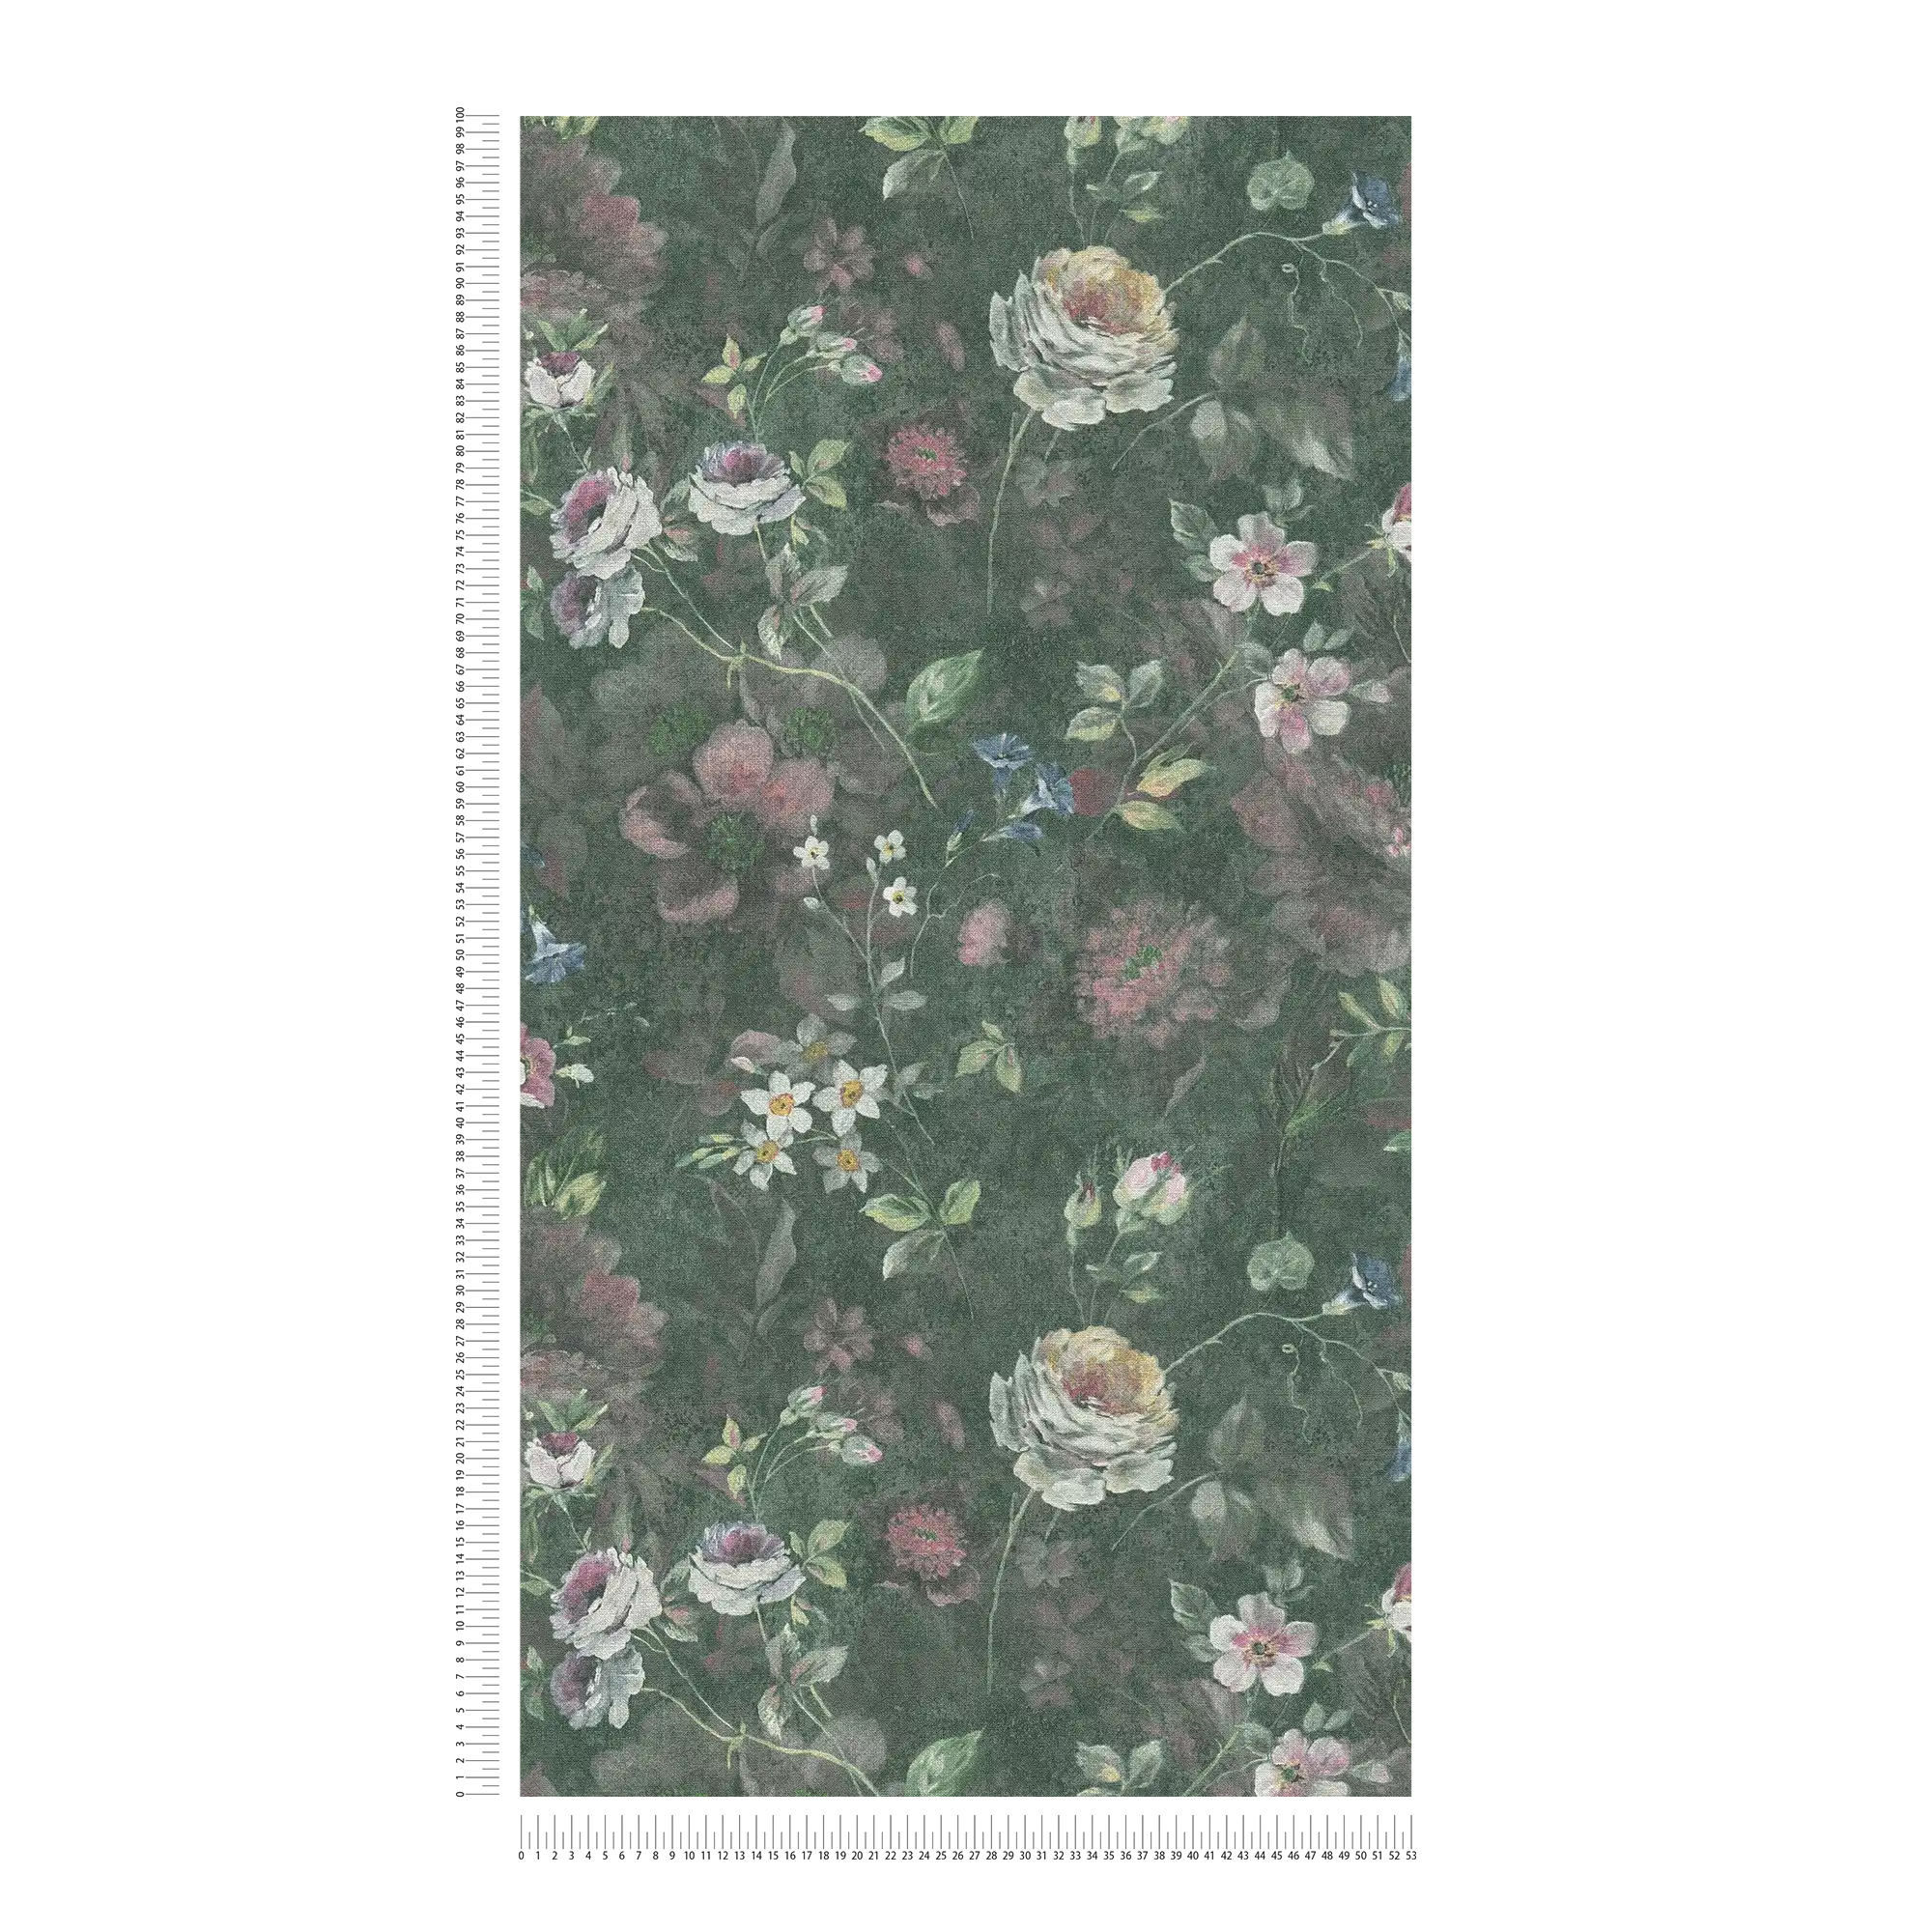             Papel pintado no tejido con motivos florales pintados Sin PVC - verde, blanco, rosa
        